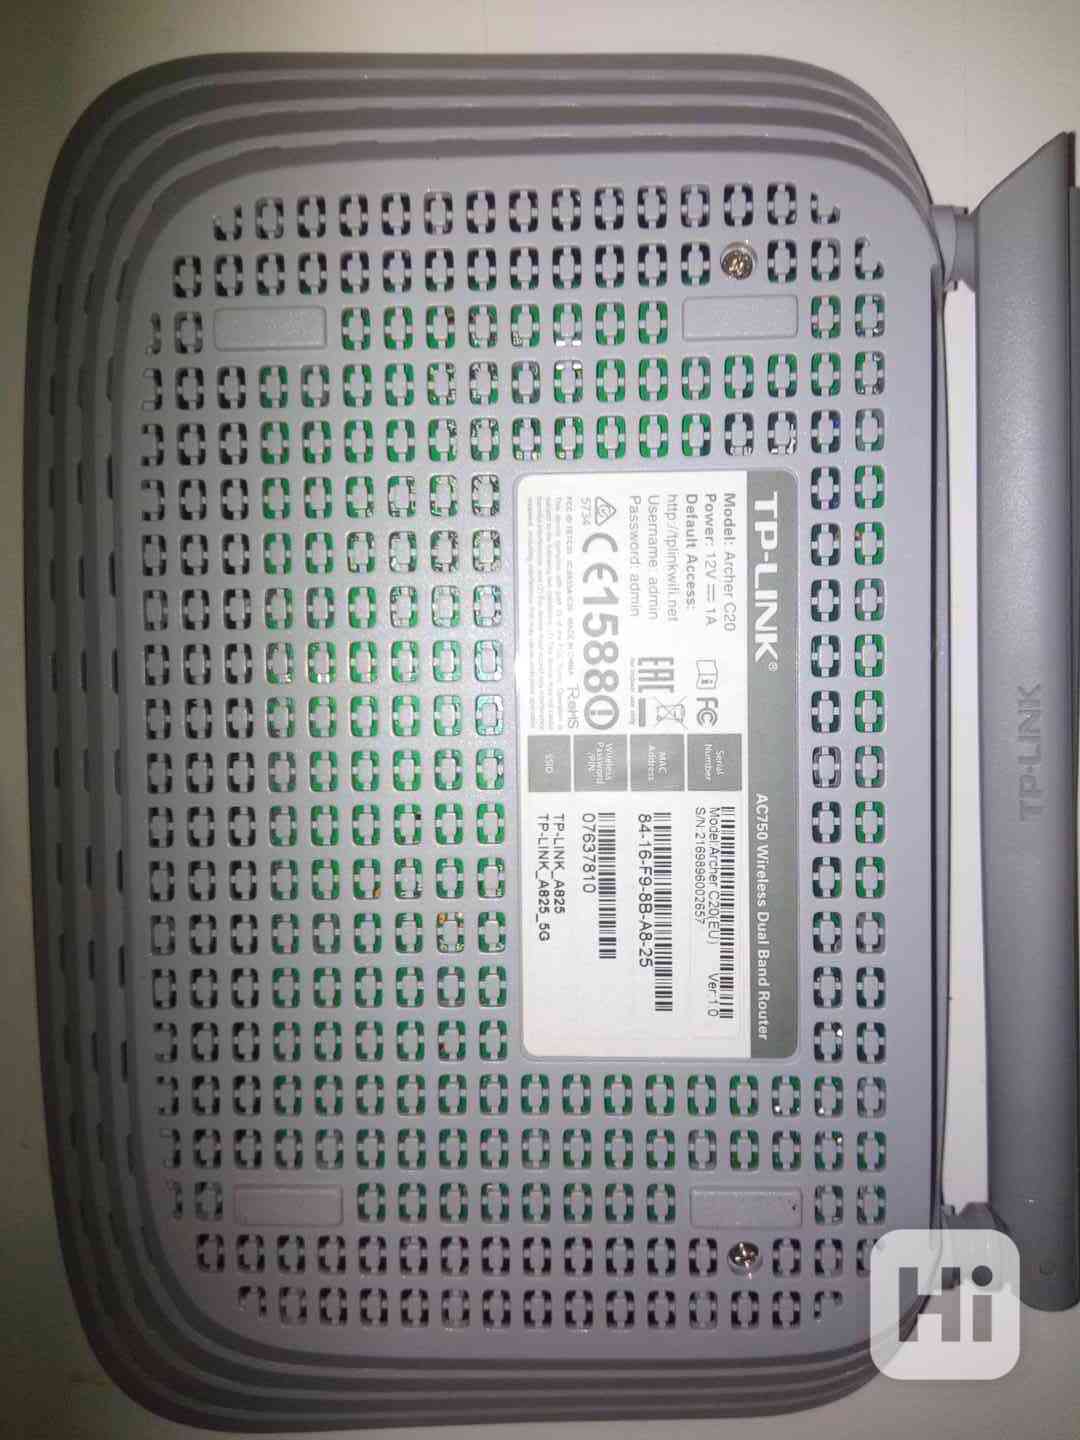 wifi router TP-LINK Archer C20 - foto 1